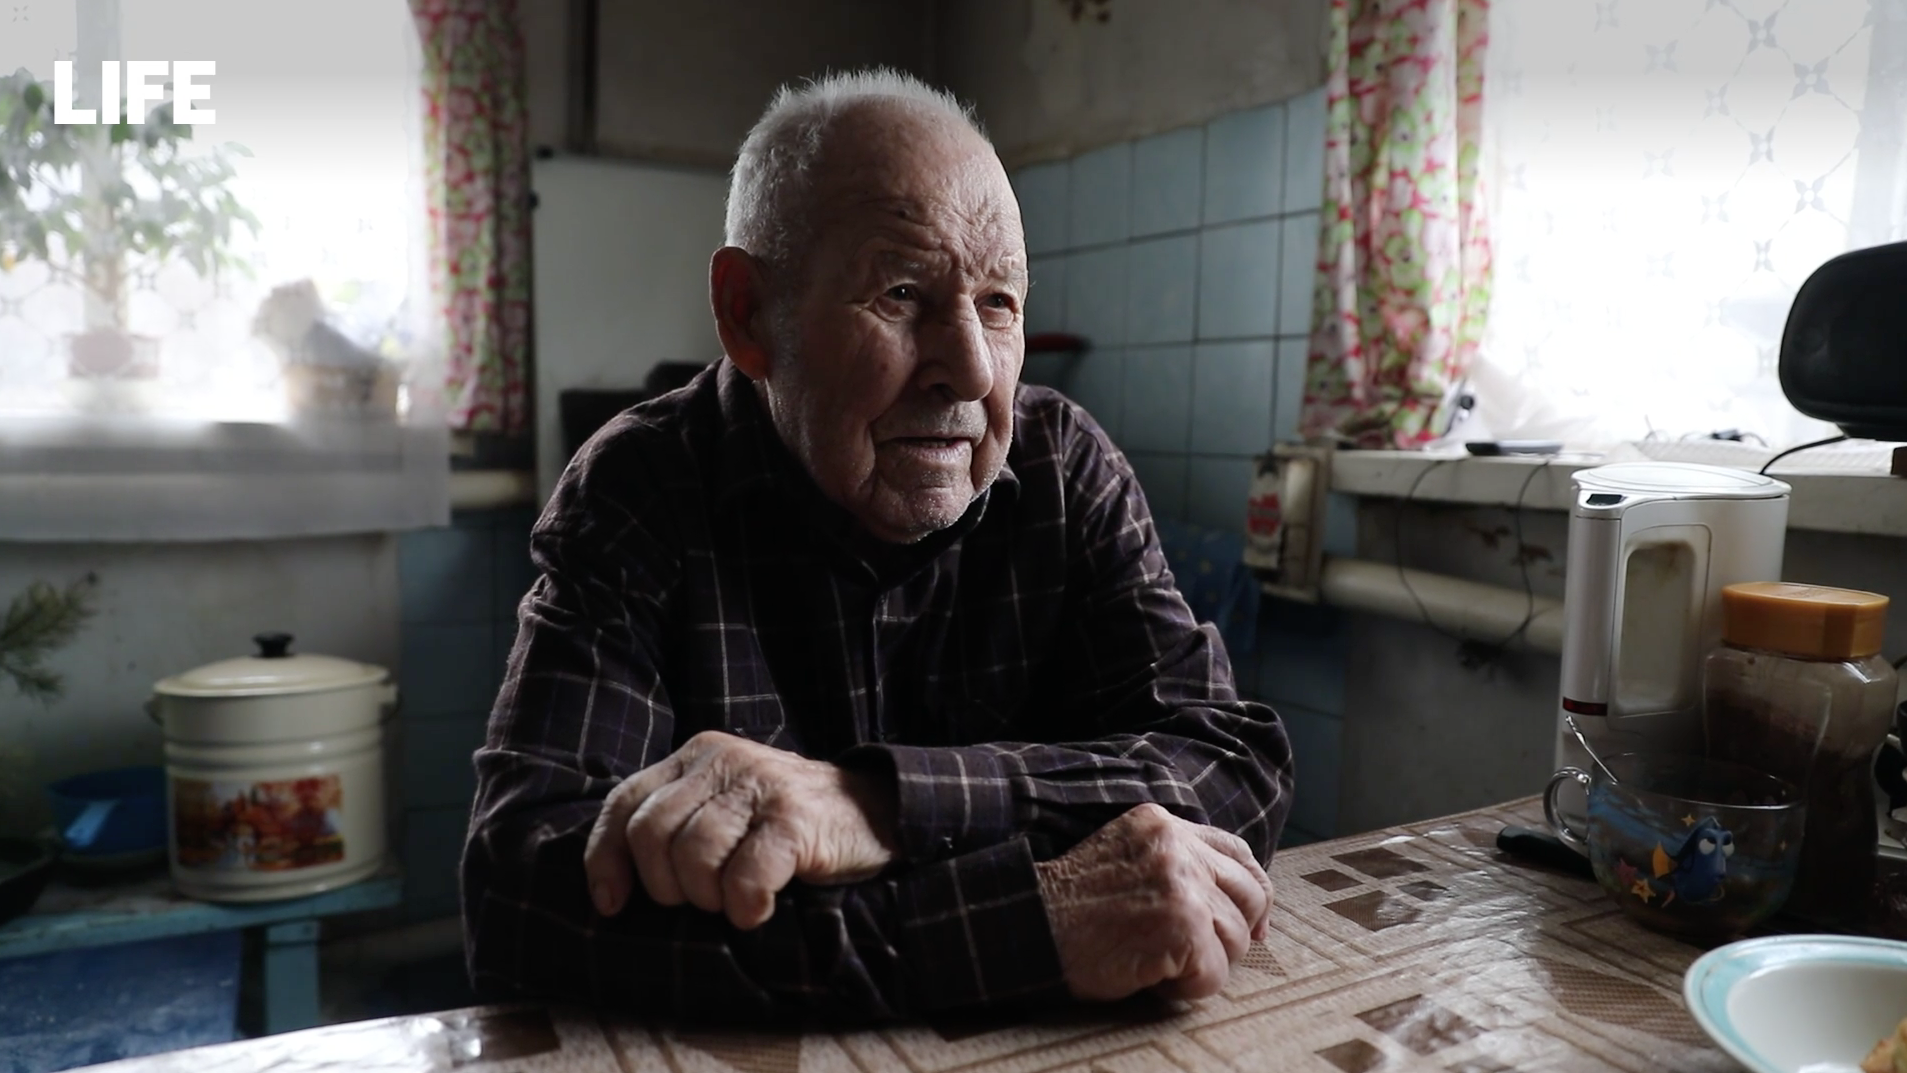 Вторую сотню жить уже не интересно: Участник Сталинградской битвы из ЛНР  о войне и жизни на освобождённых территориях